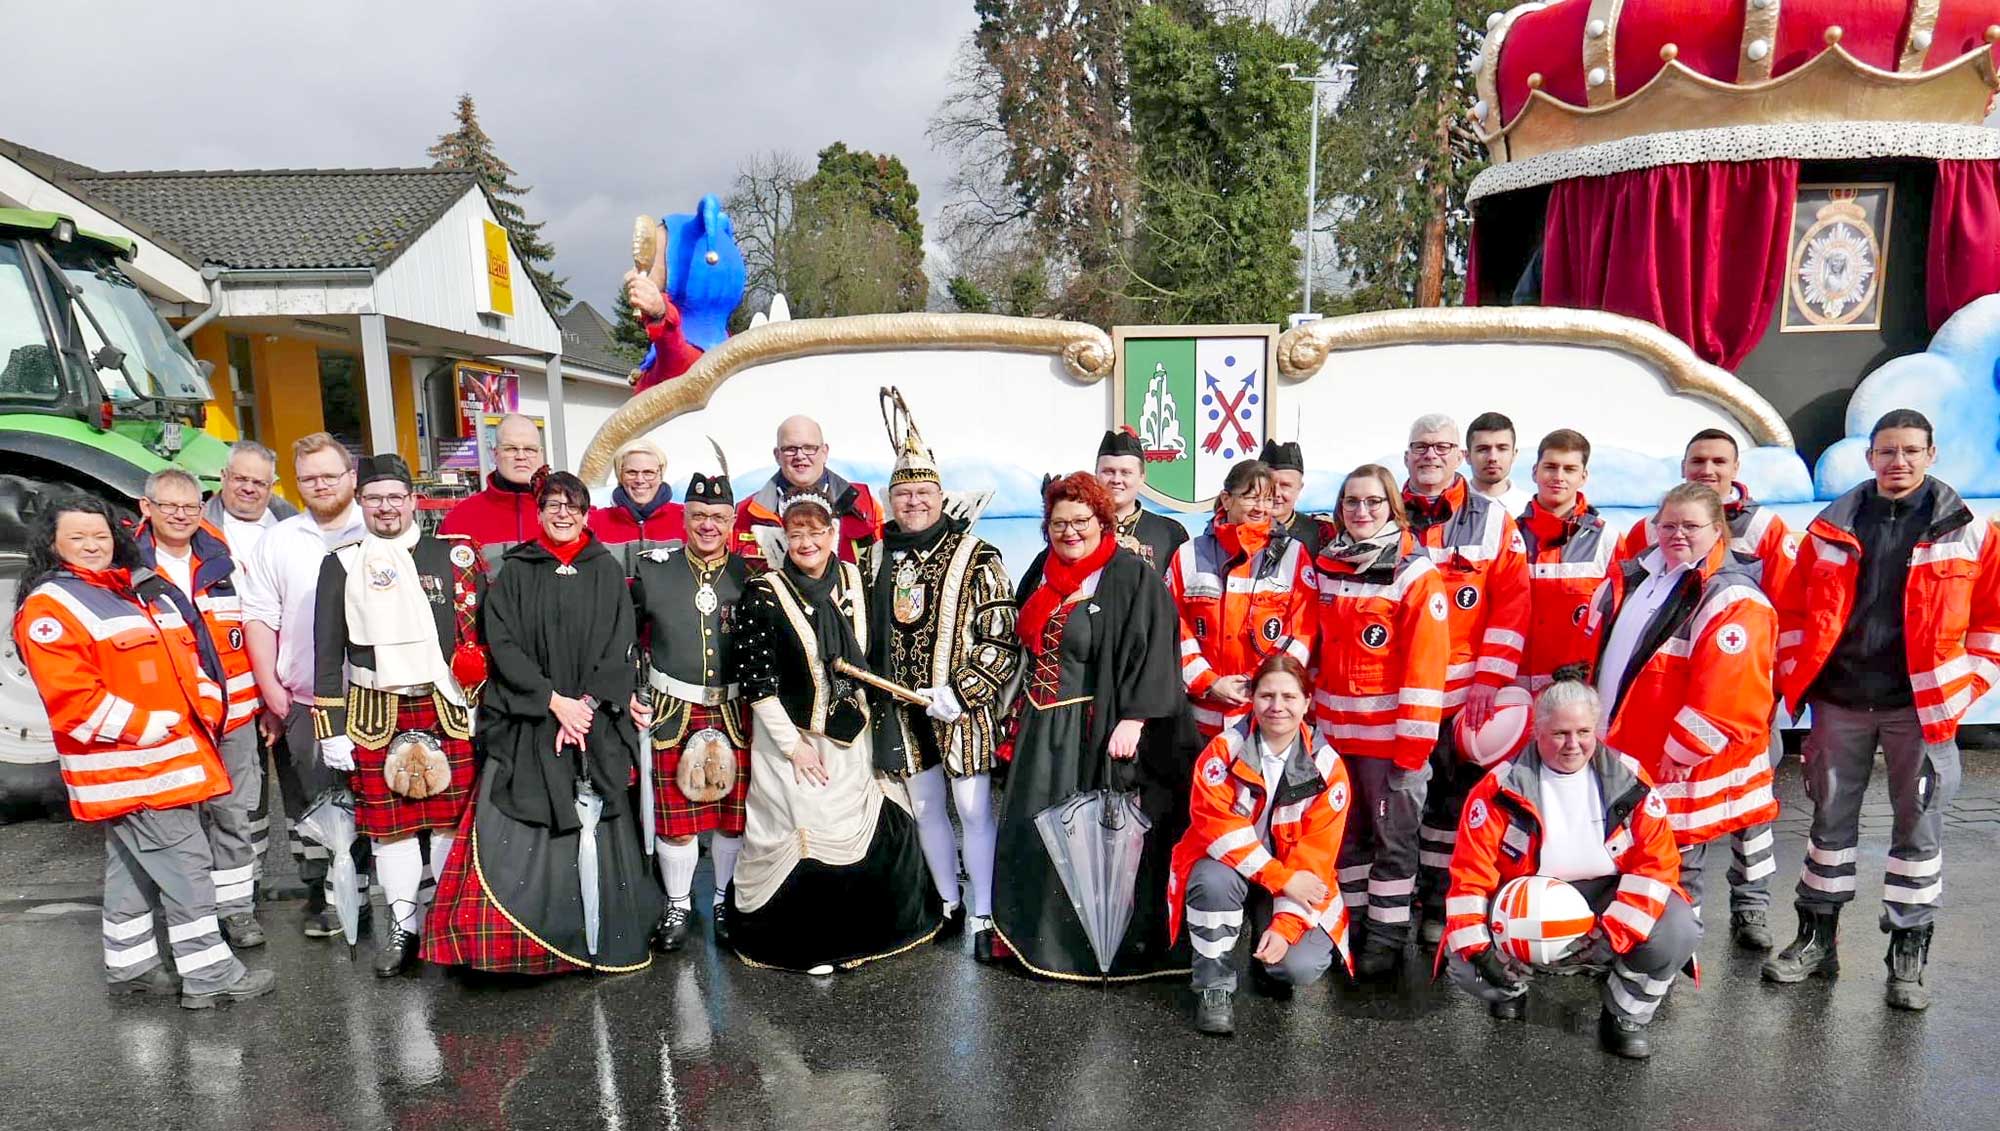 Die DRK-Ehrenamtler des Ortsvereins Bad Breisig trafen am Karnevalsumzug in Bad Breisig auch auf das Prinzenpaar samt Hofstaat. (Foto: Bernhard Grünwald, DRK-Kreisverband Ahrweiler e.V.)